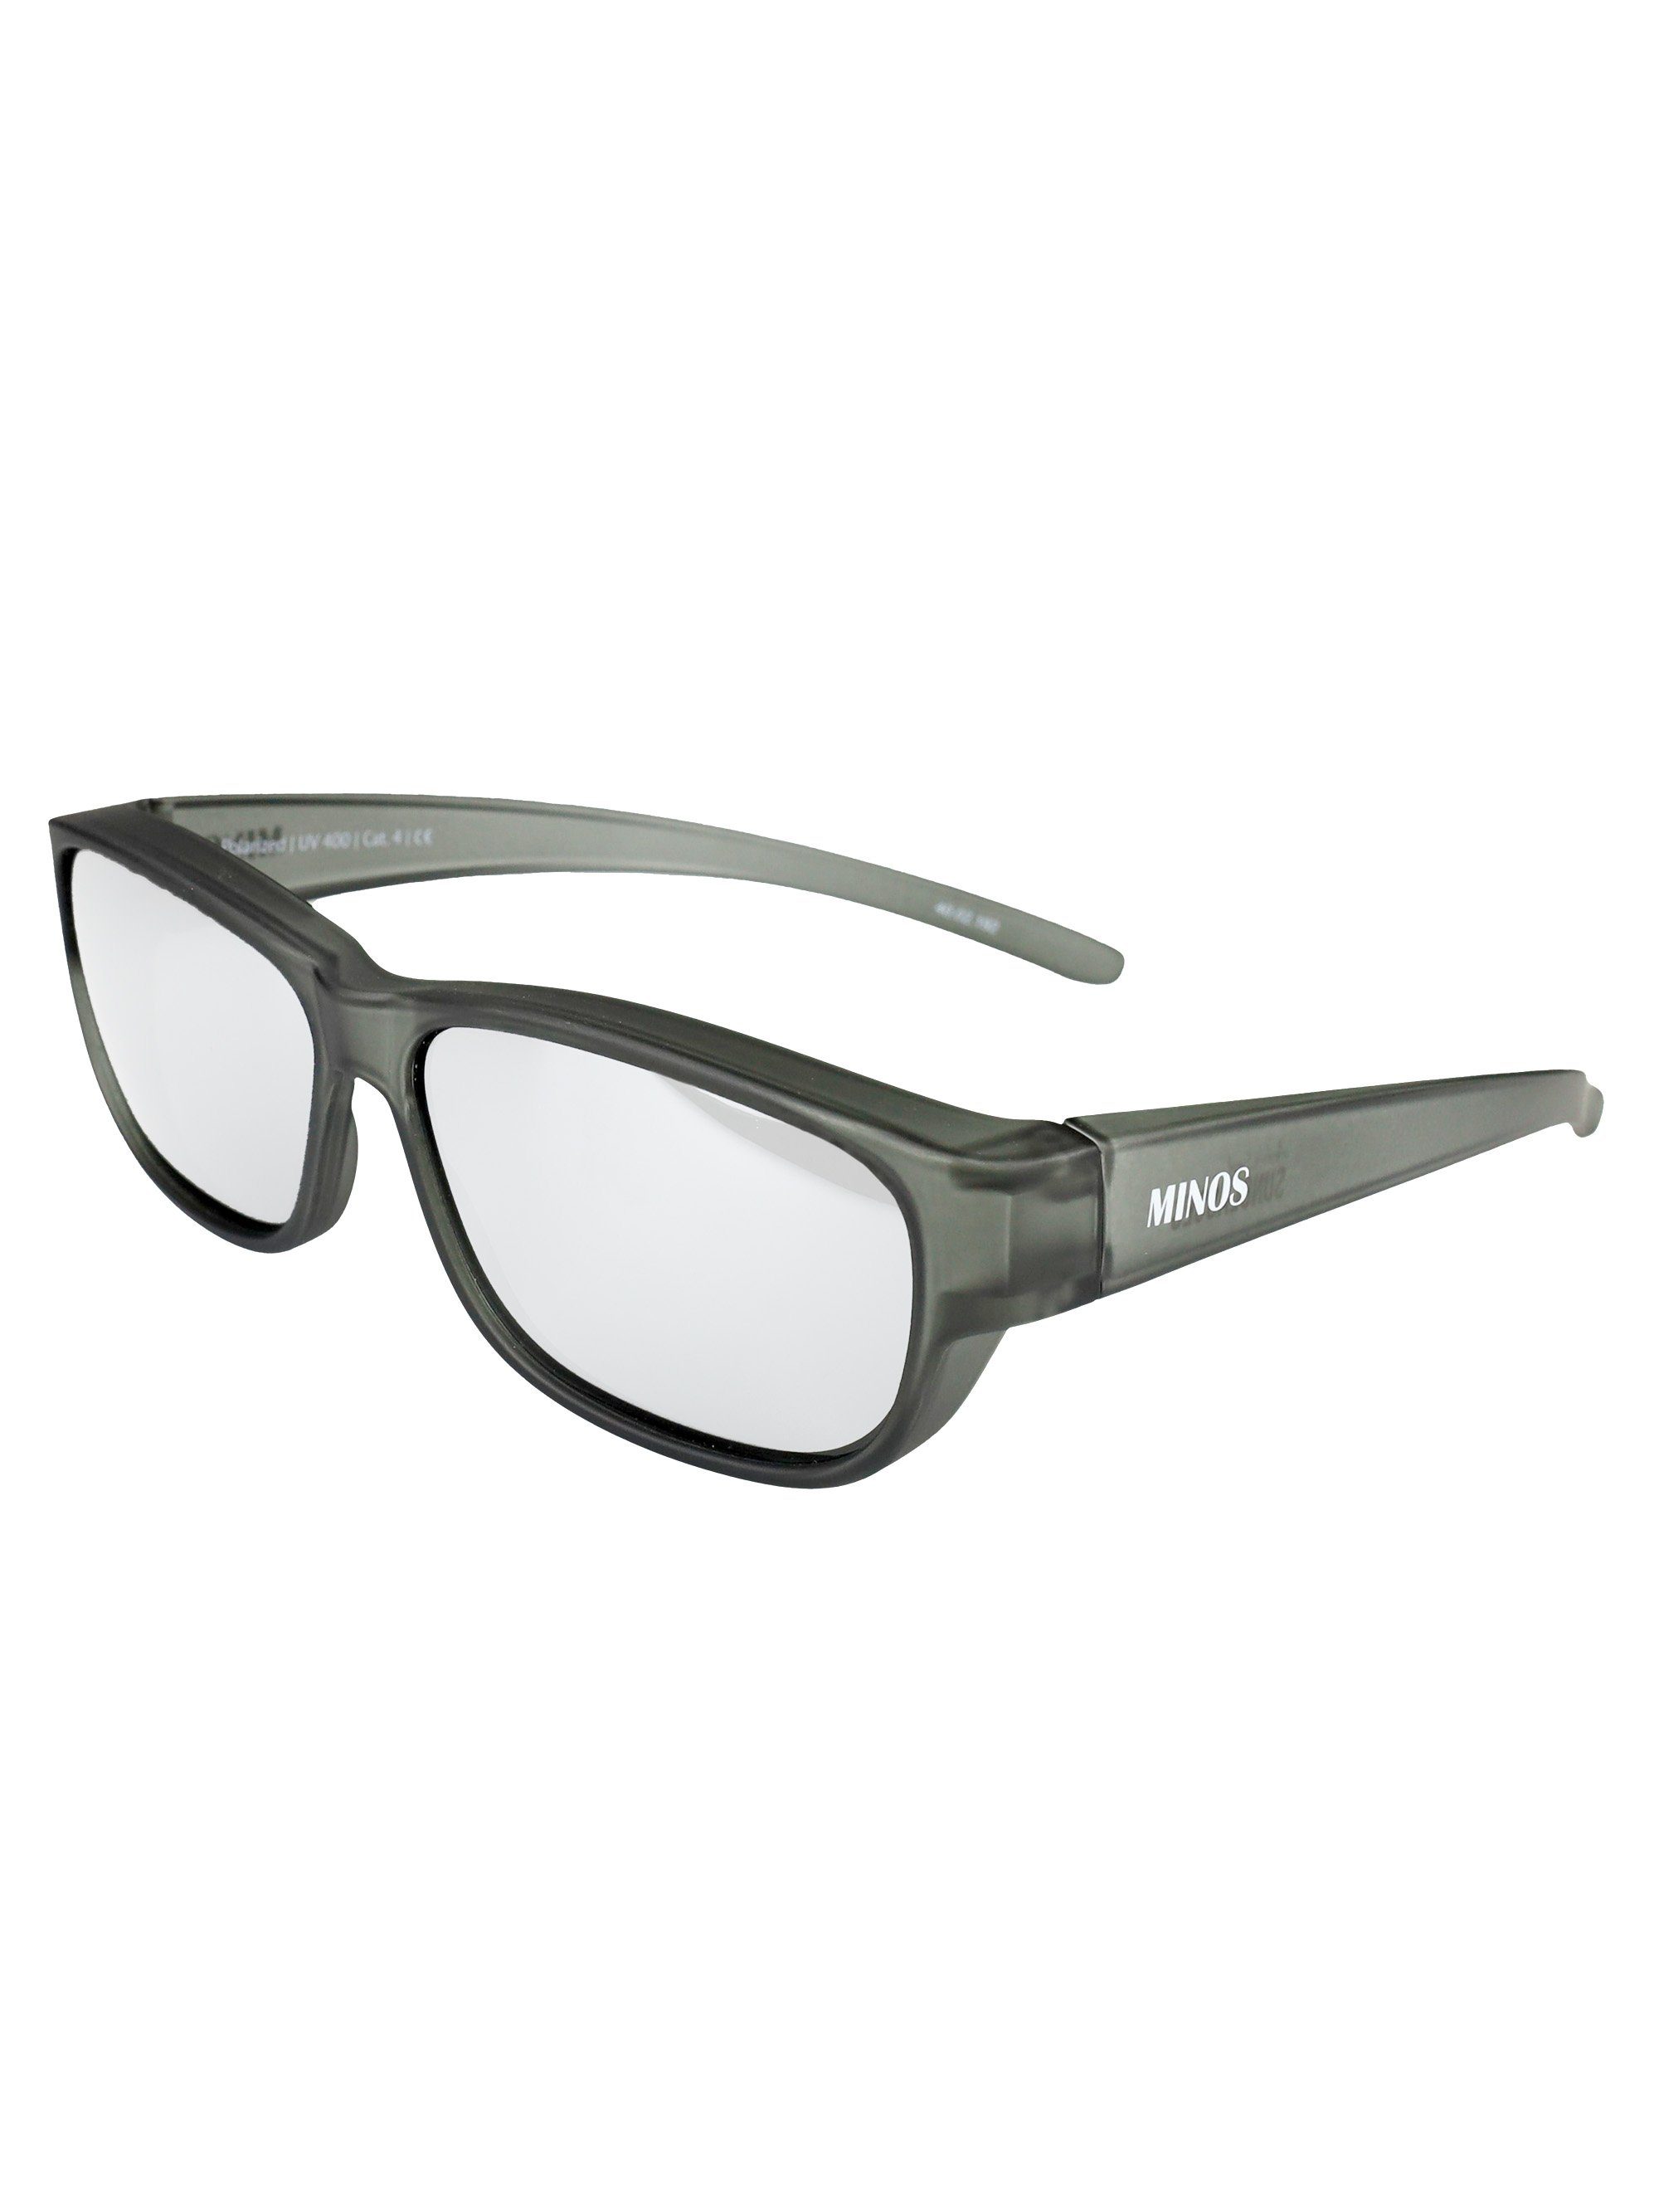 ActiveSol SUNGLASSES Sonnenbrille Überziehsonnenbrille Minos (inklusive Schiebebox und Brillenputztuch) schwarz verspiegelt